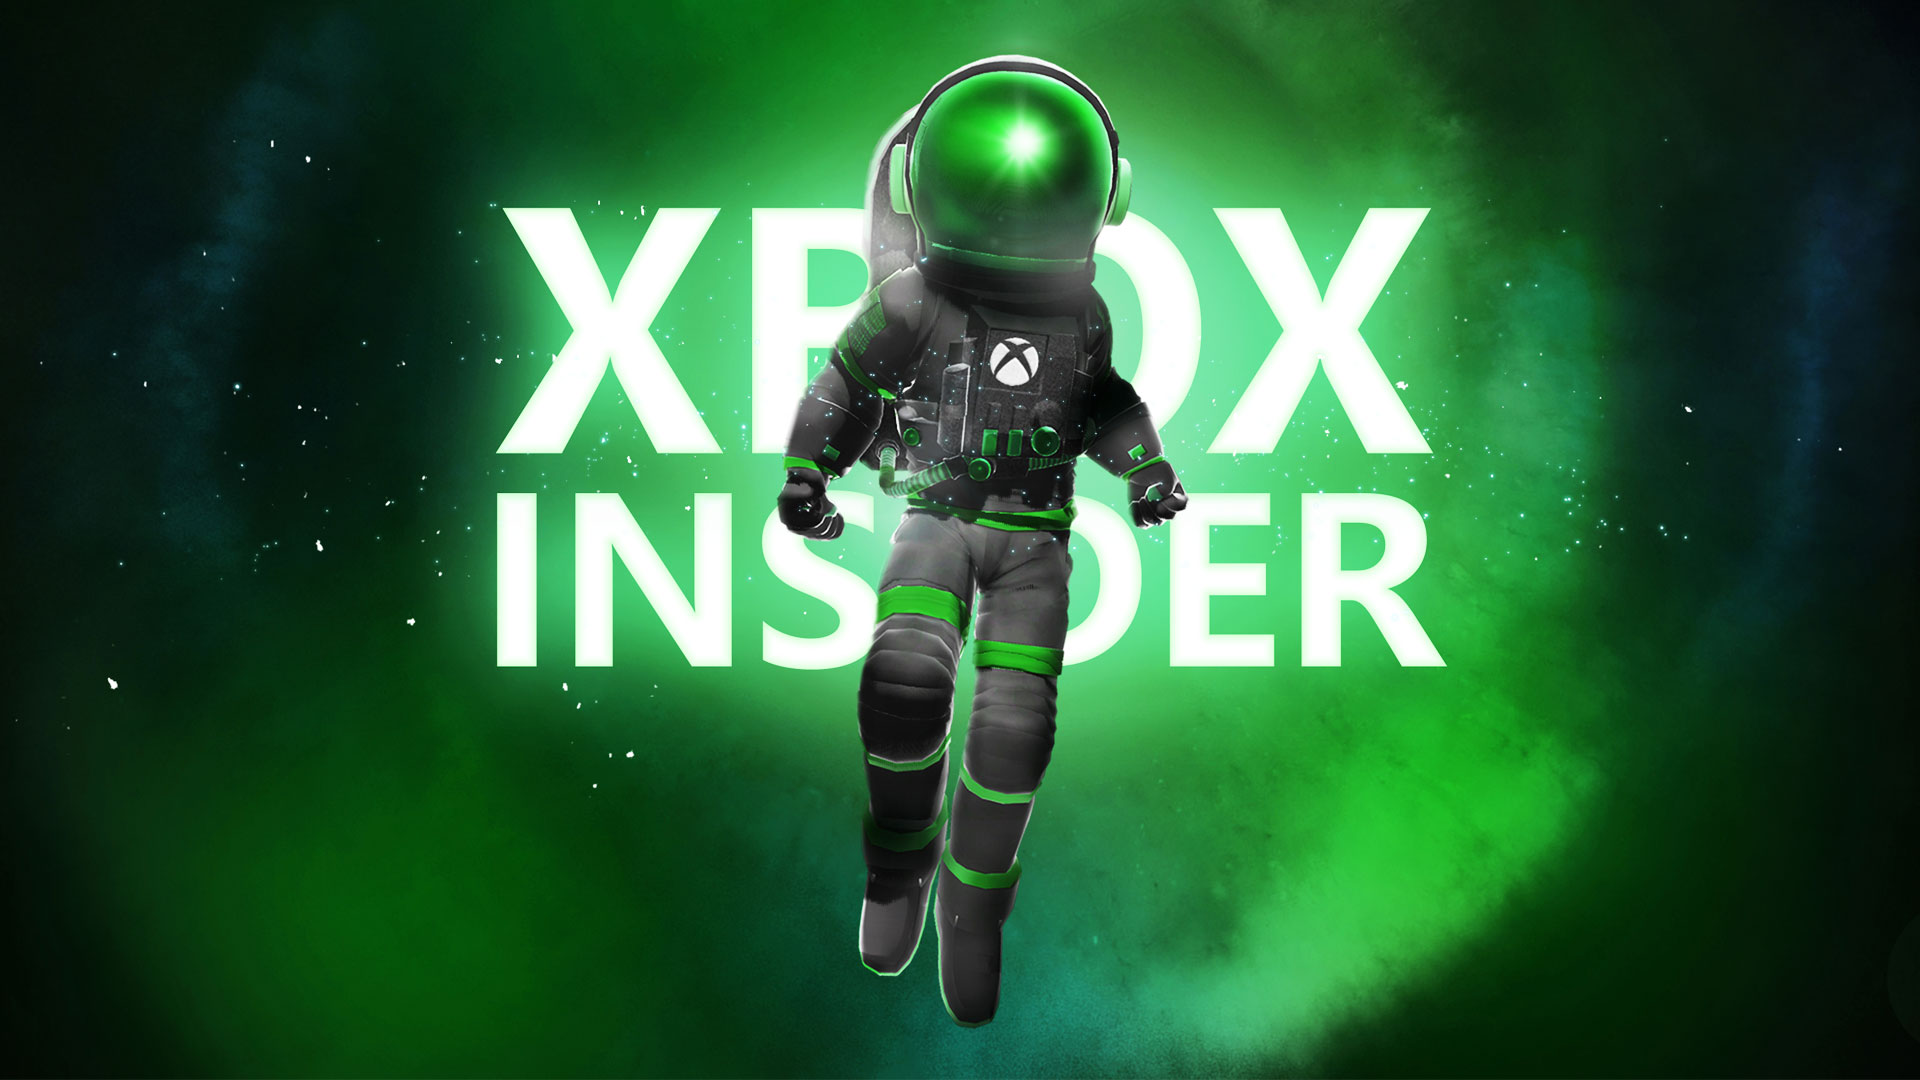 Xbox auf der Hauptkonsole: Microsoft erklärt die Bedienung in der Oberfläche |  Xbox One